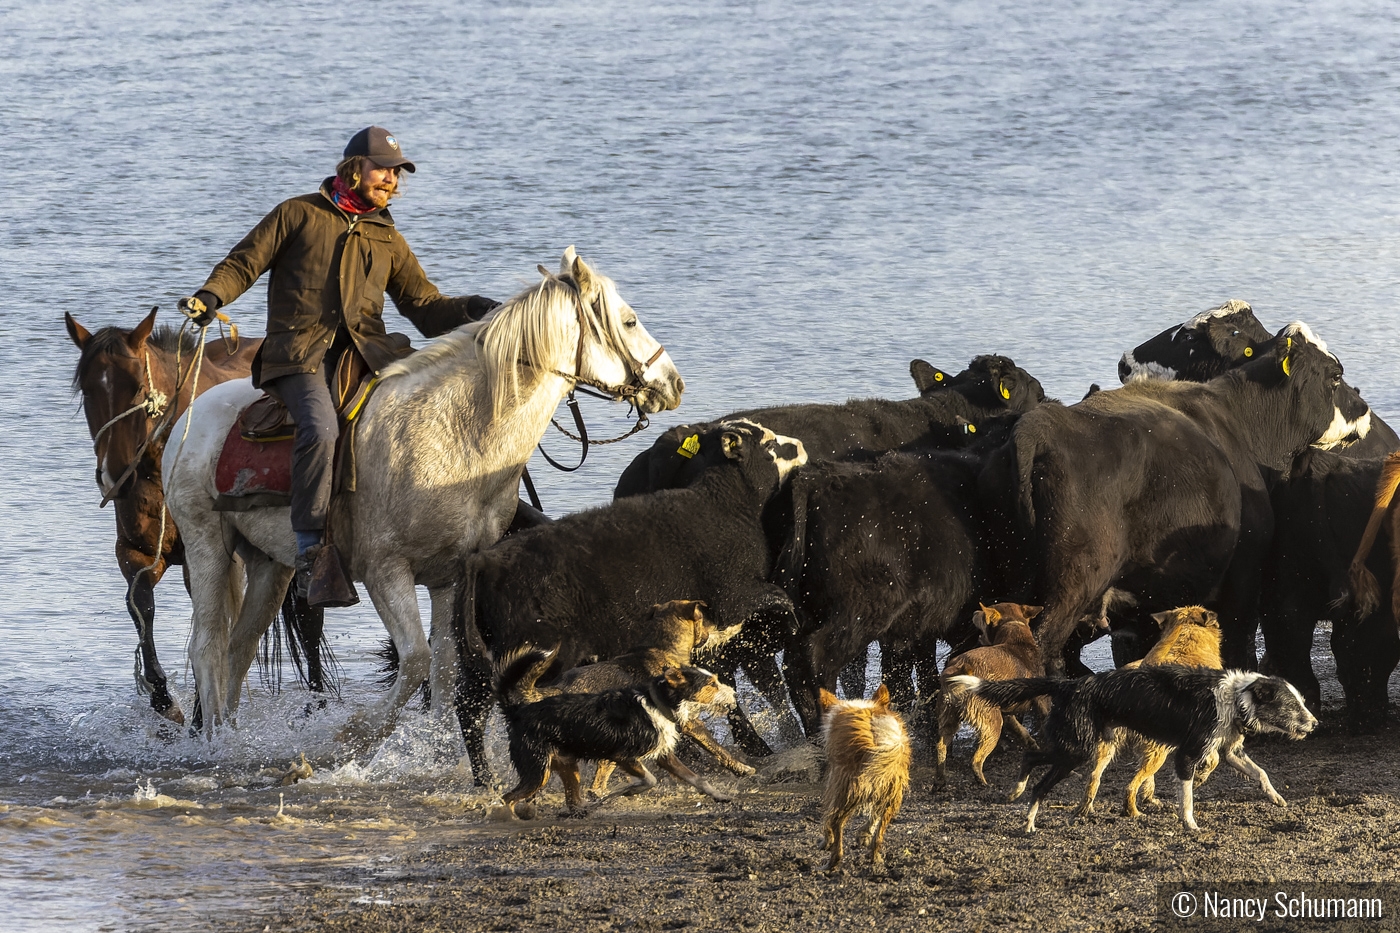 Chilean Cattle Roundup by Nancy Schumann